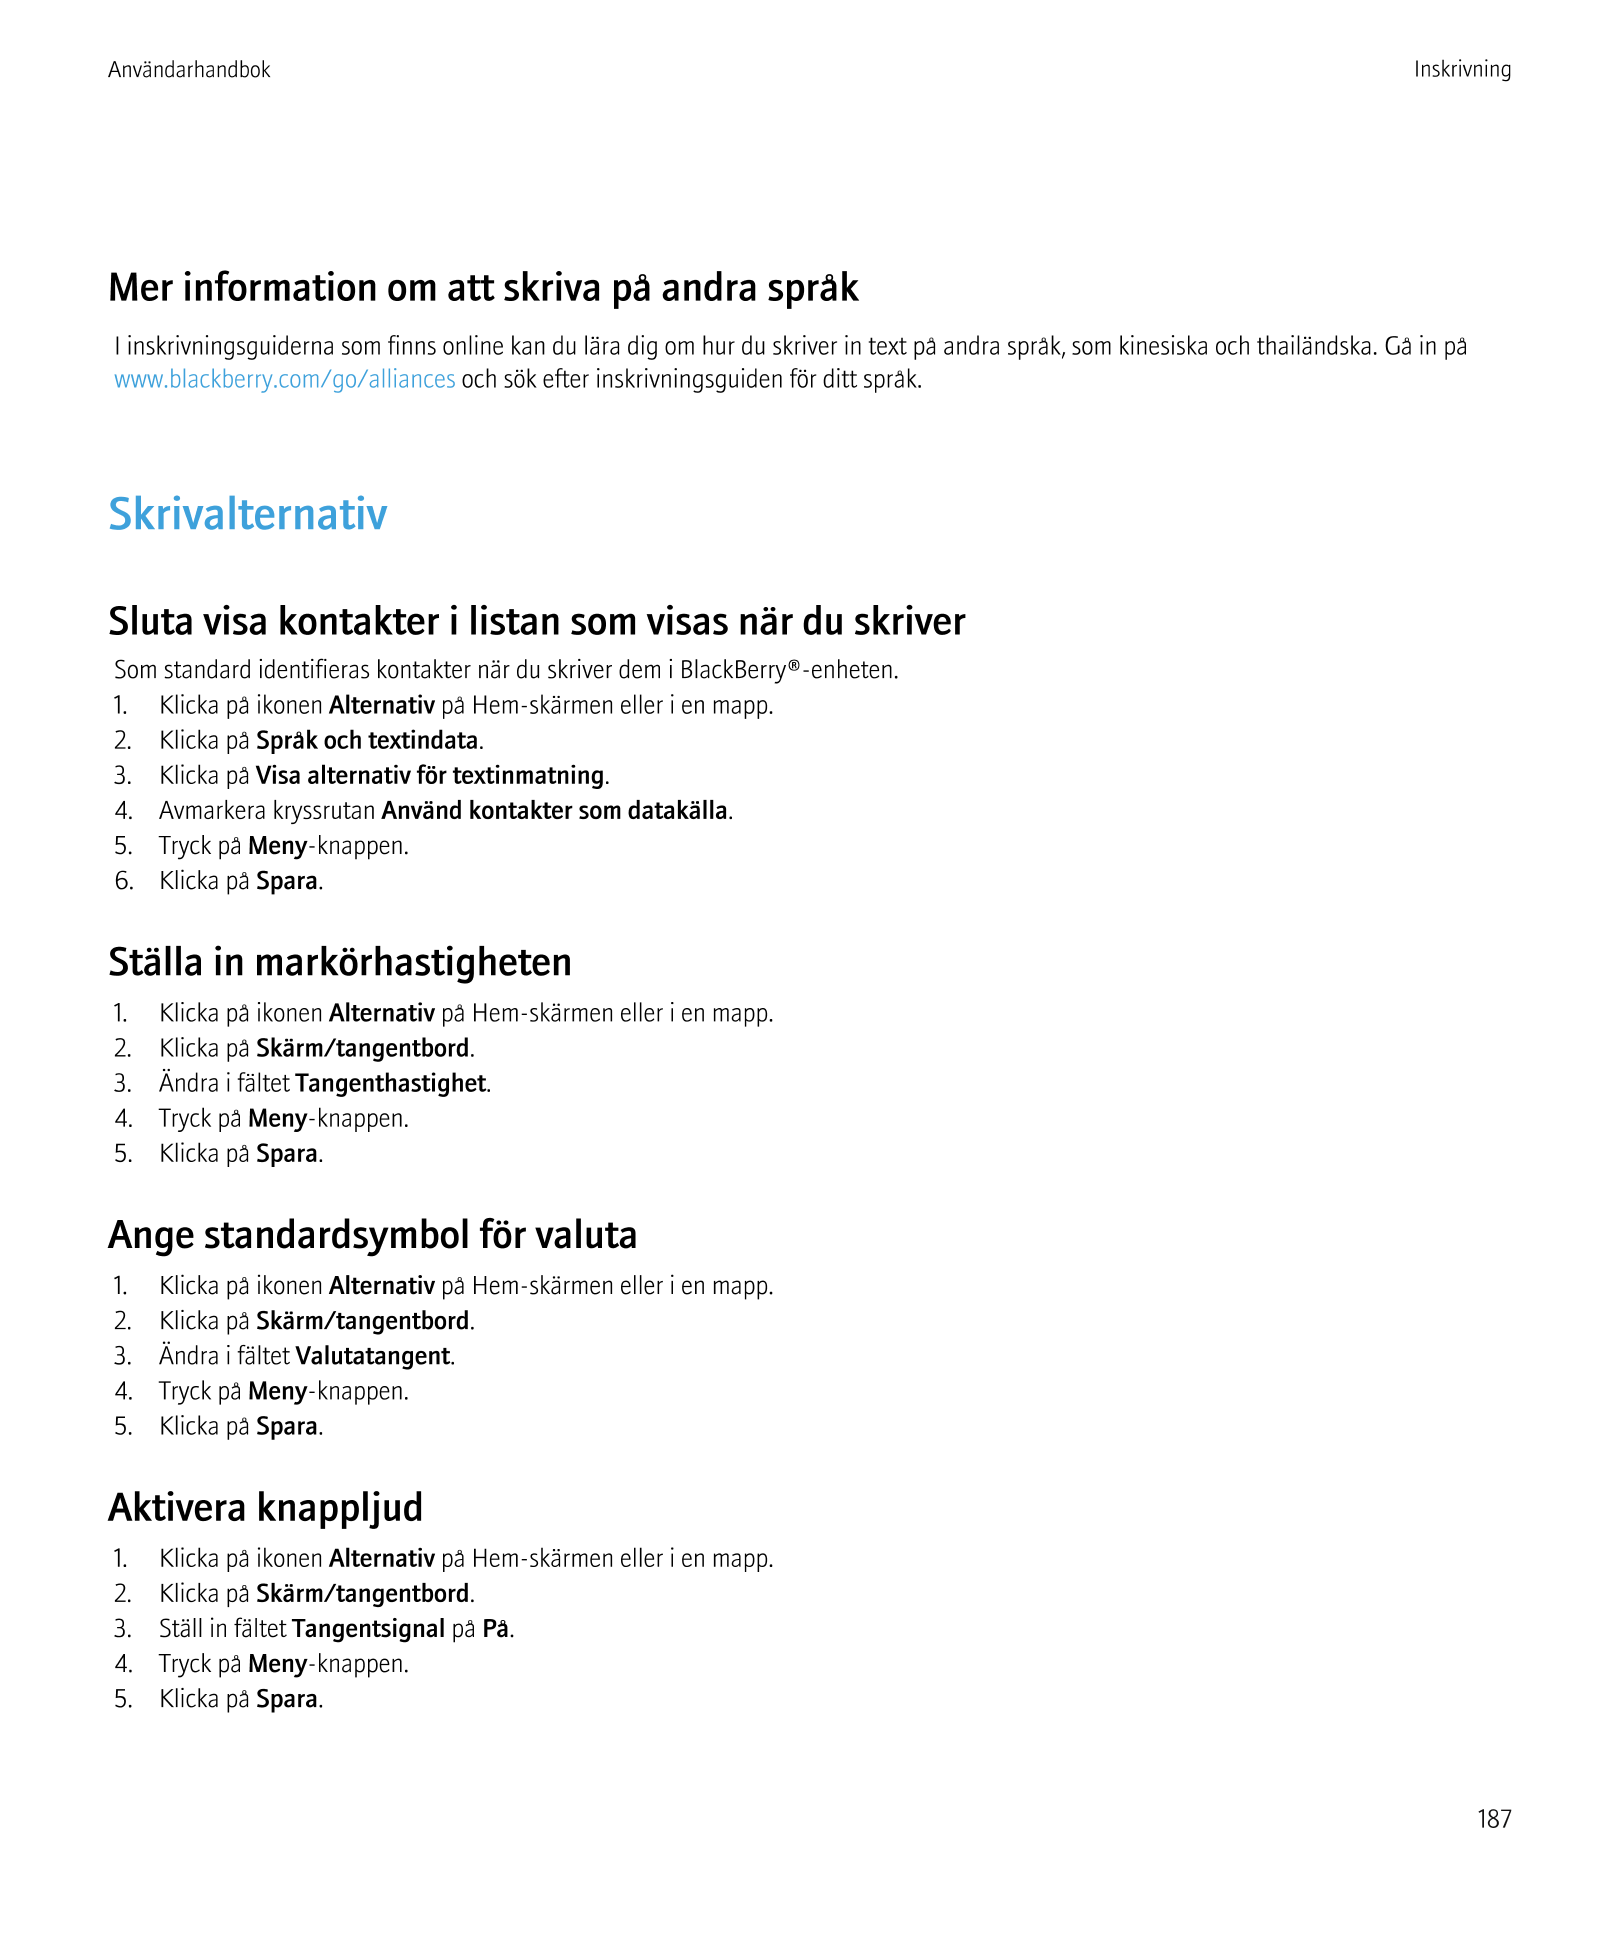 Användarhandbok Inskrivning
Mer information om att skriva på andra språk
I inskrivningsguiderna som finns online kan du lära dig